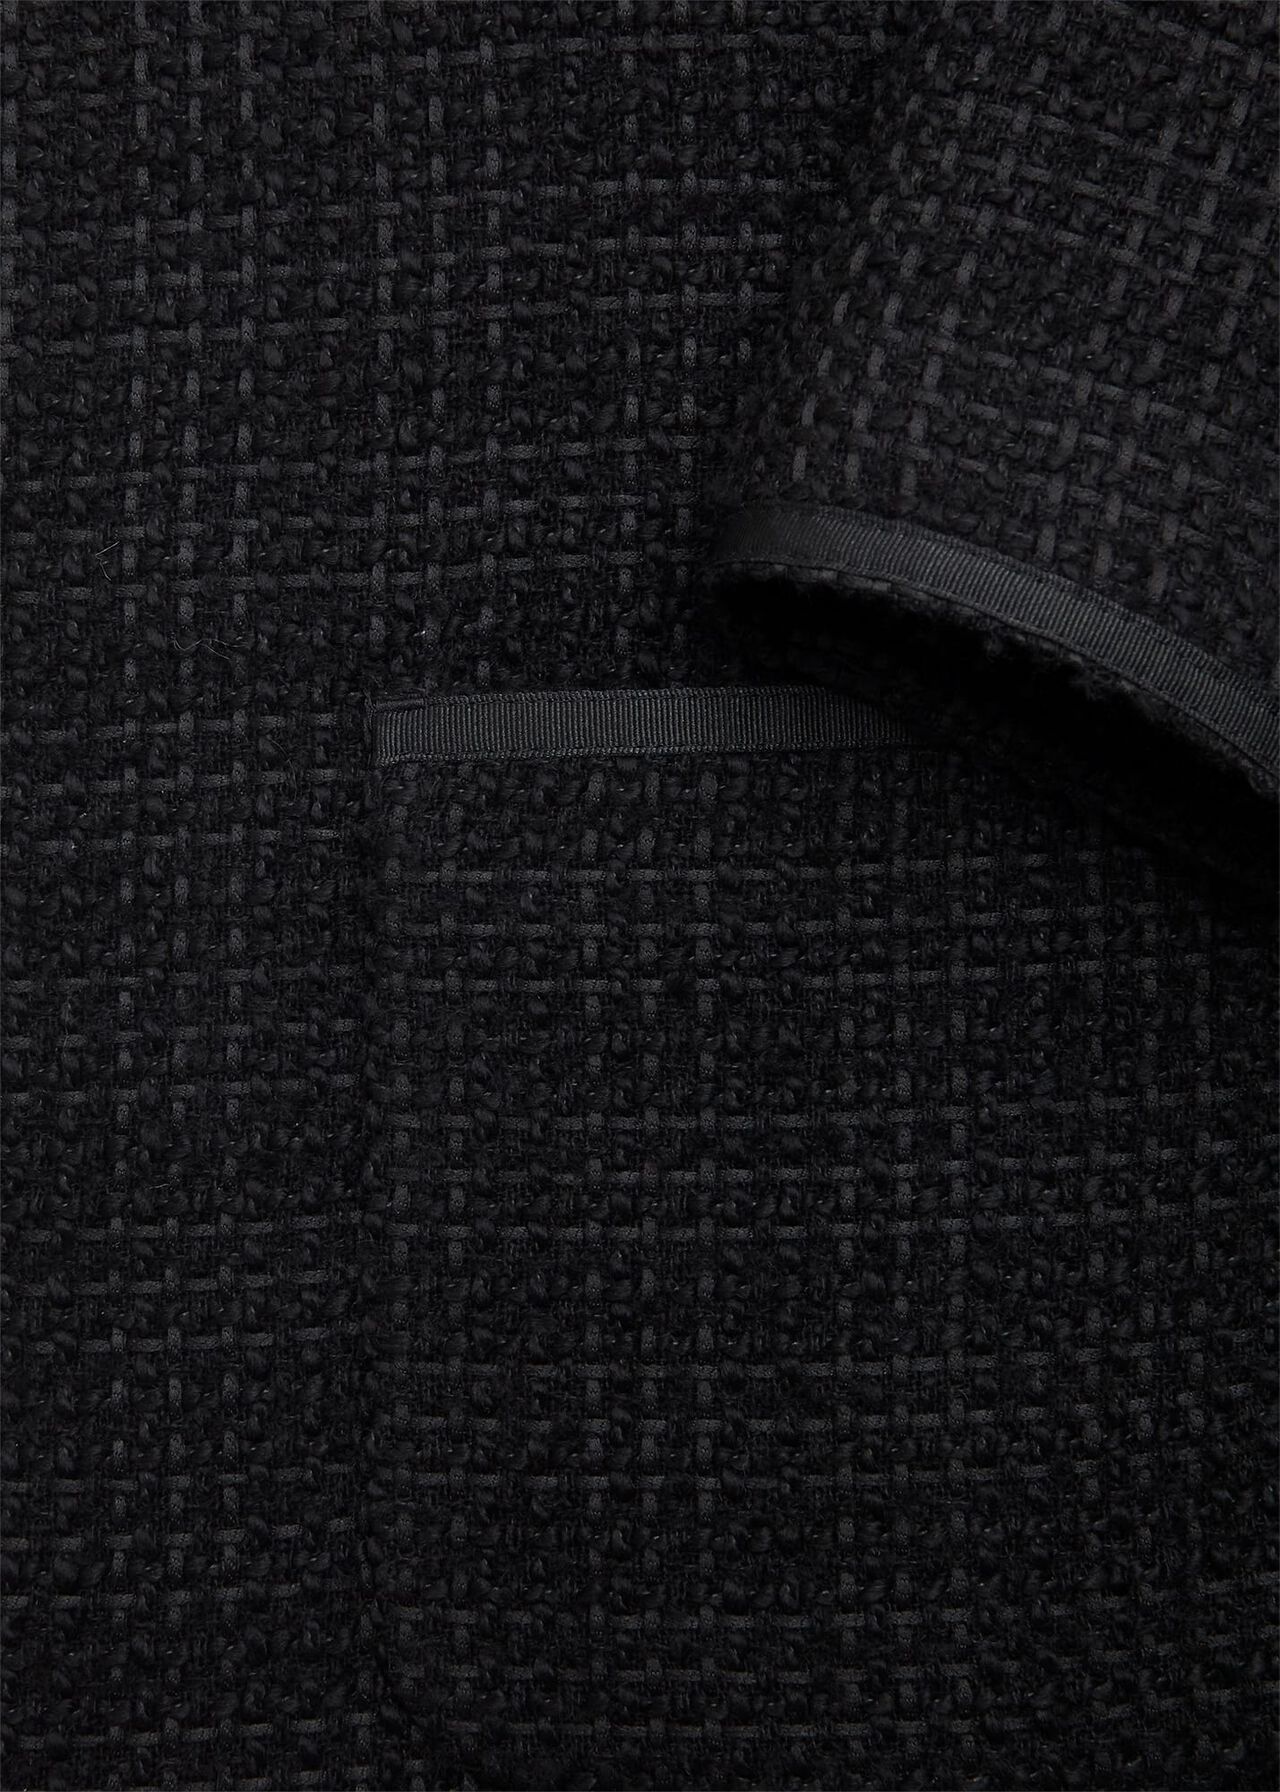 Elaine Tweed Coat With Wool, Black, hi-res